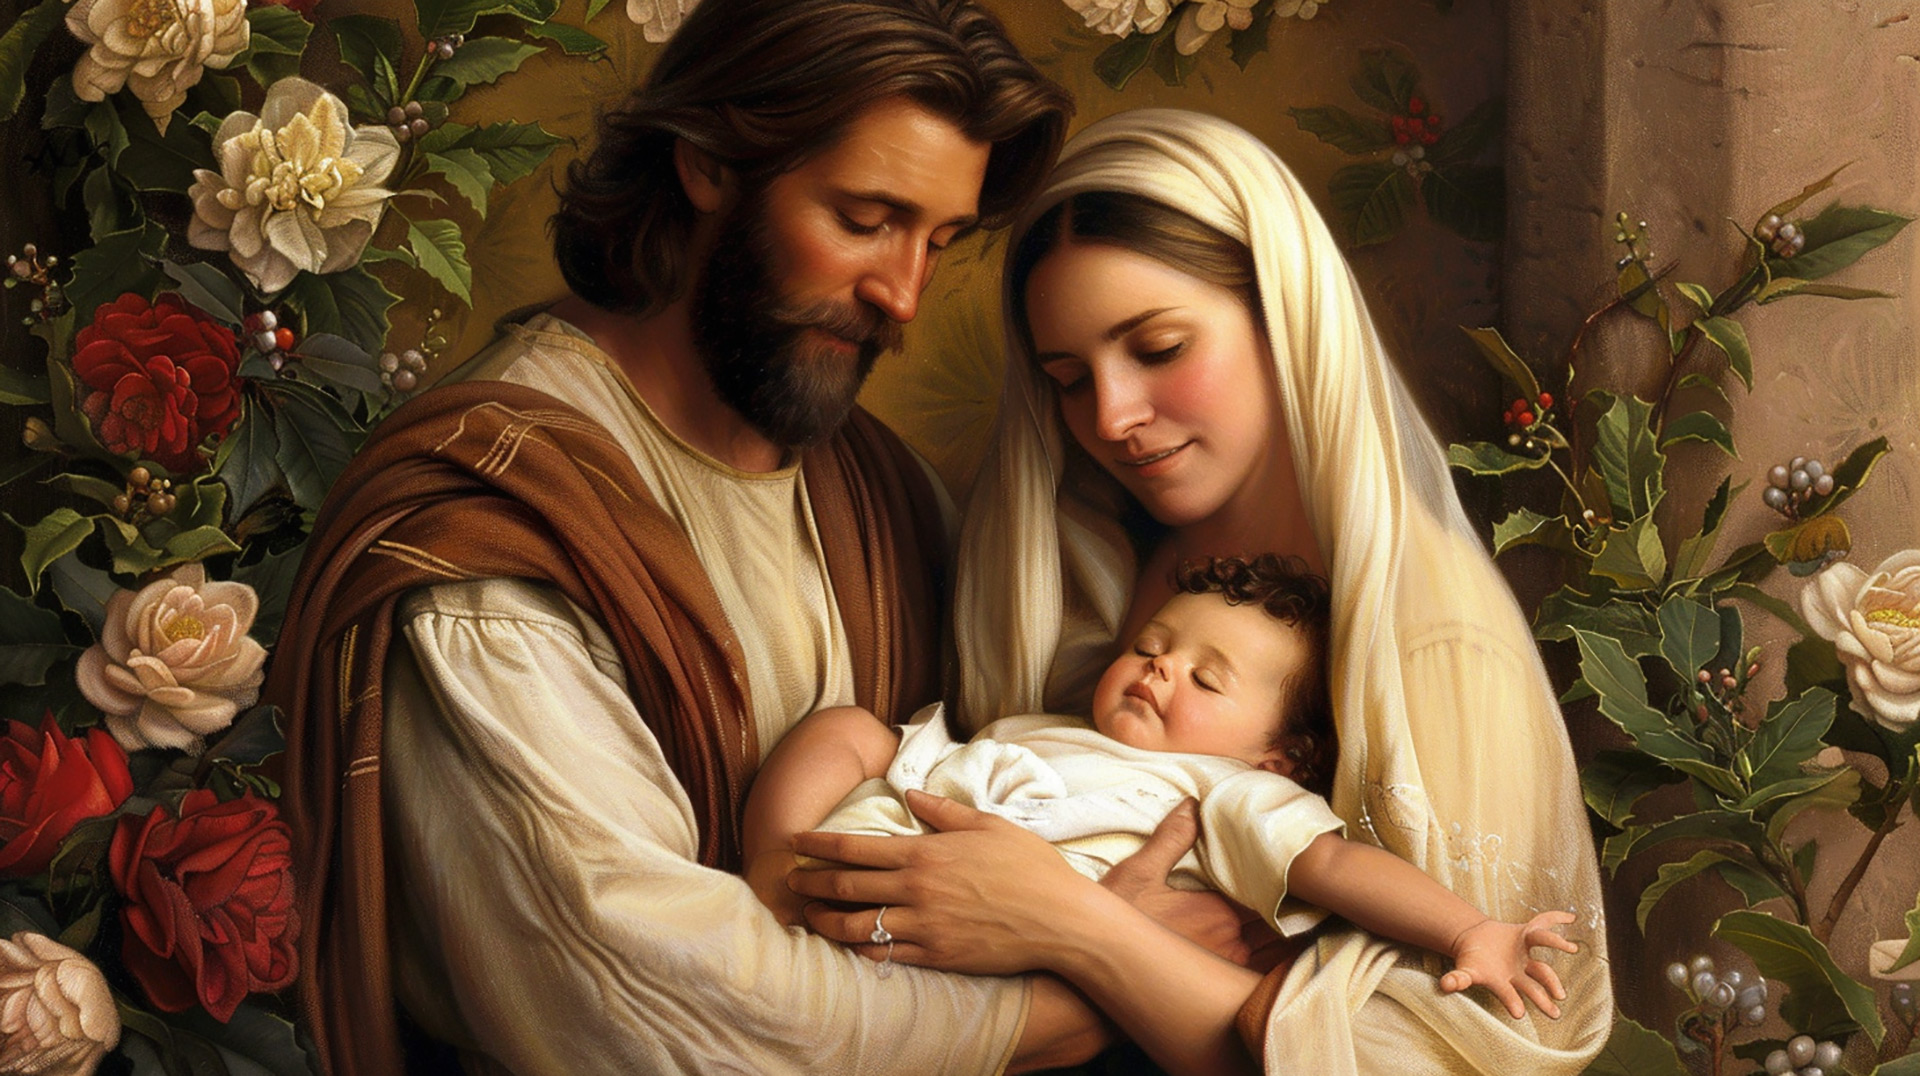 Blessed Night: Reverent Religious Christmas Artwork